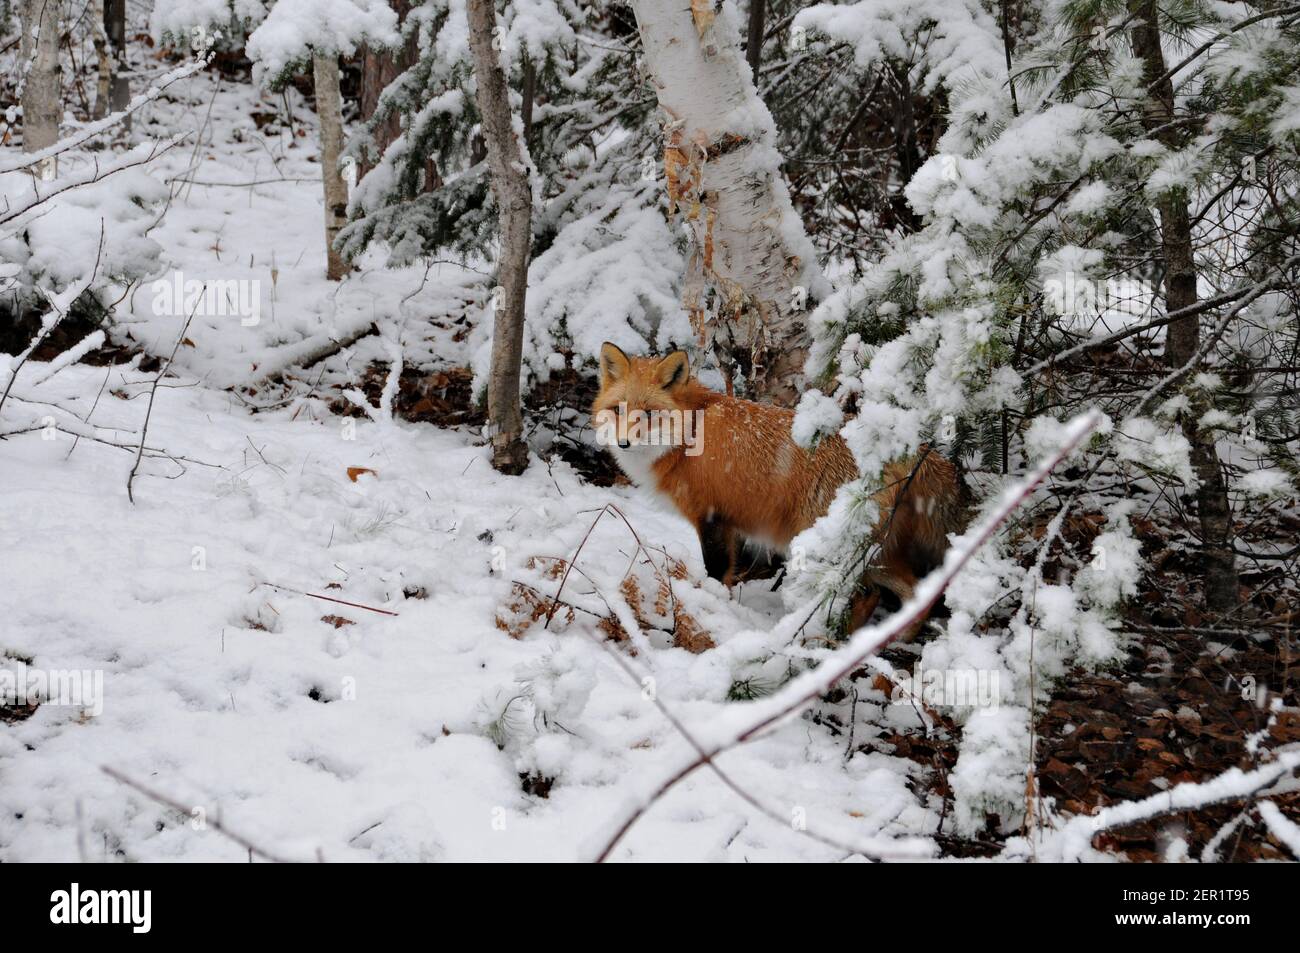 Vista ravvicinata del profilo della volpe rossa nella stagione invernale con sfondo di alberi di betulla nel suo ambiente e habitat. Immagine FOX. Immagine. Verticale. Foto Stock